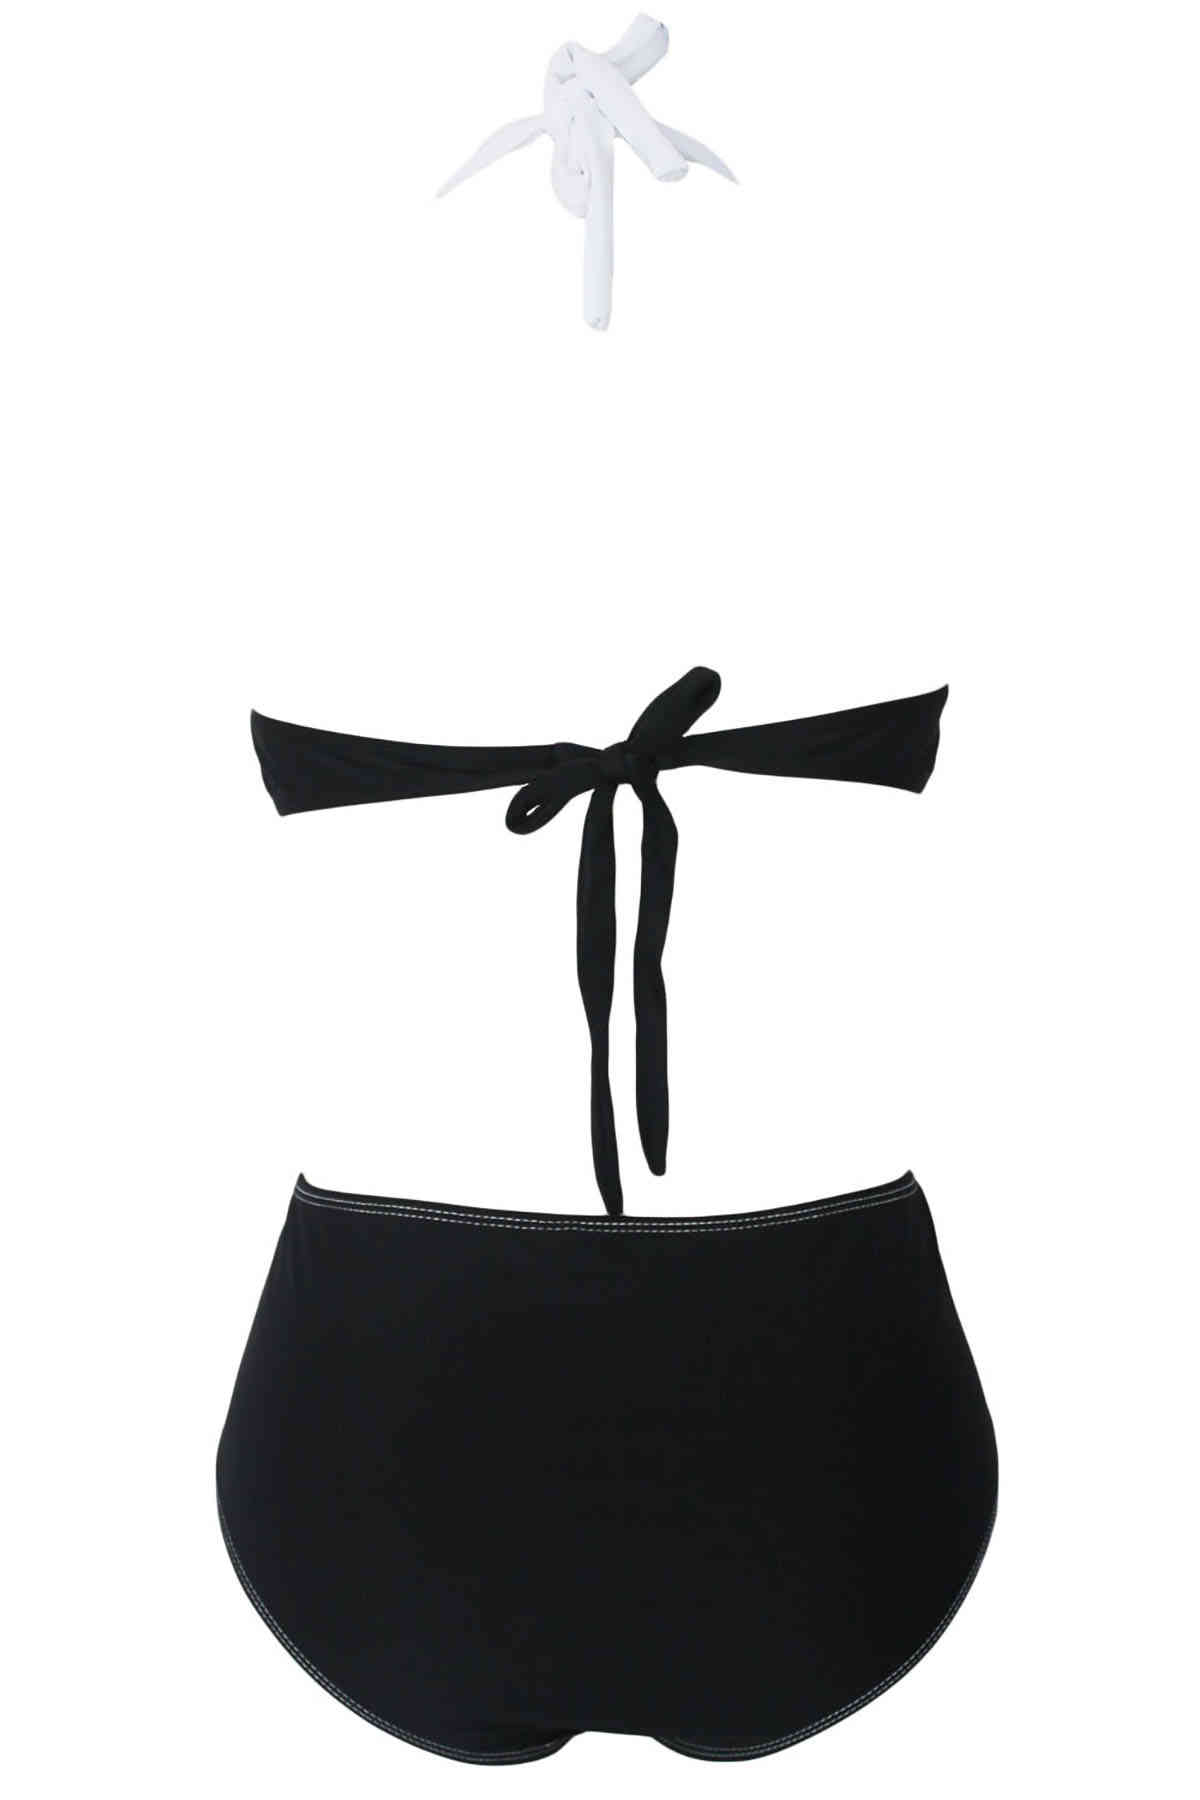 angelsin kapli siyah beyaz sik tasarimli bikini bikini takm angelsin 11081 16 B